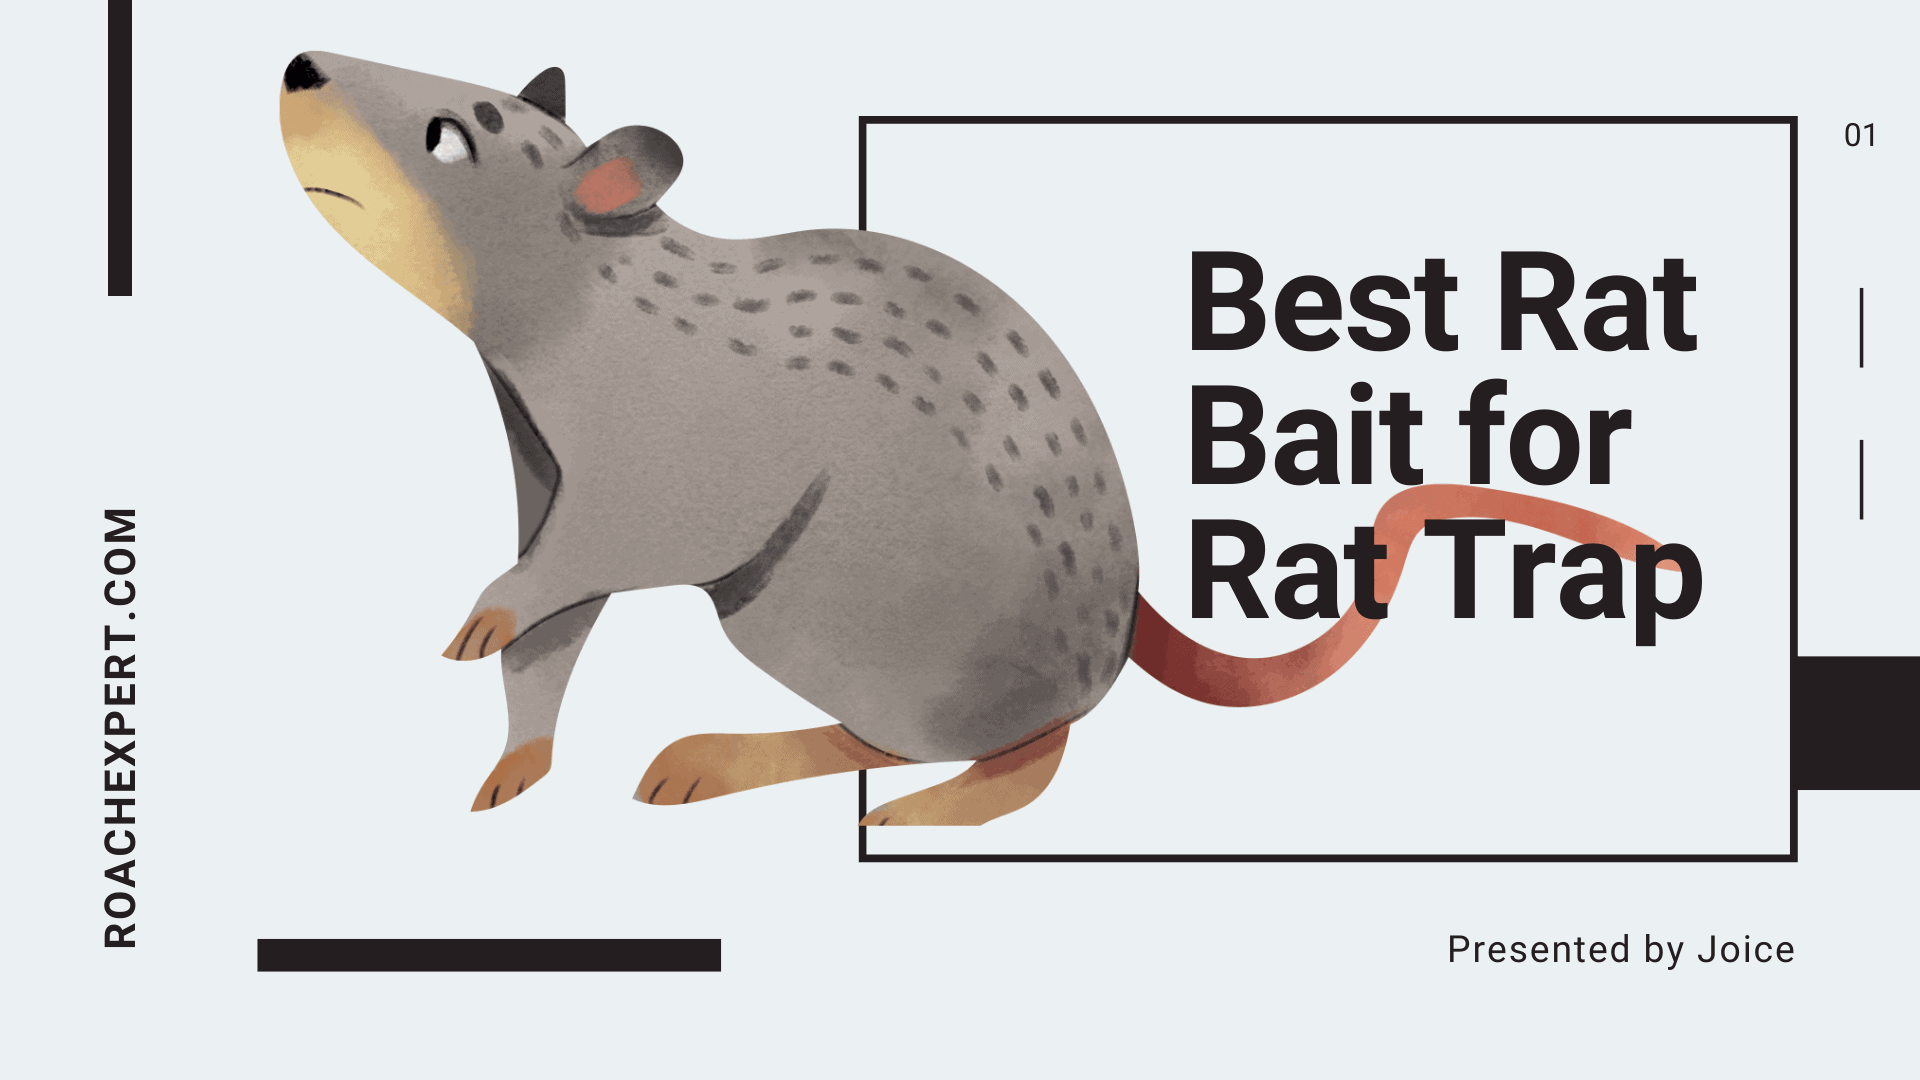 Best Rat Bait for Rat Trap